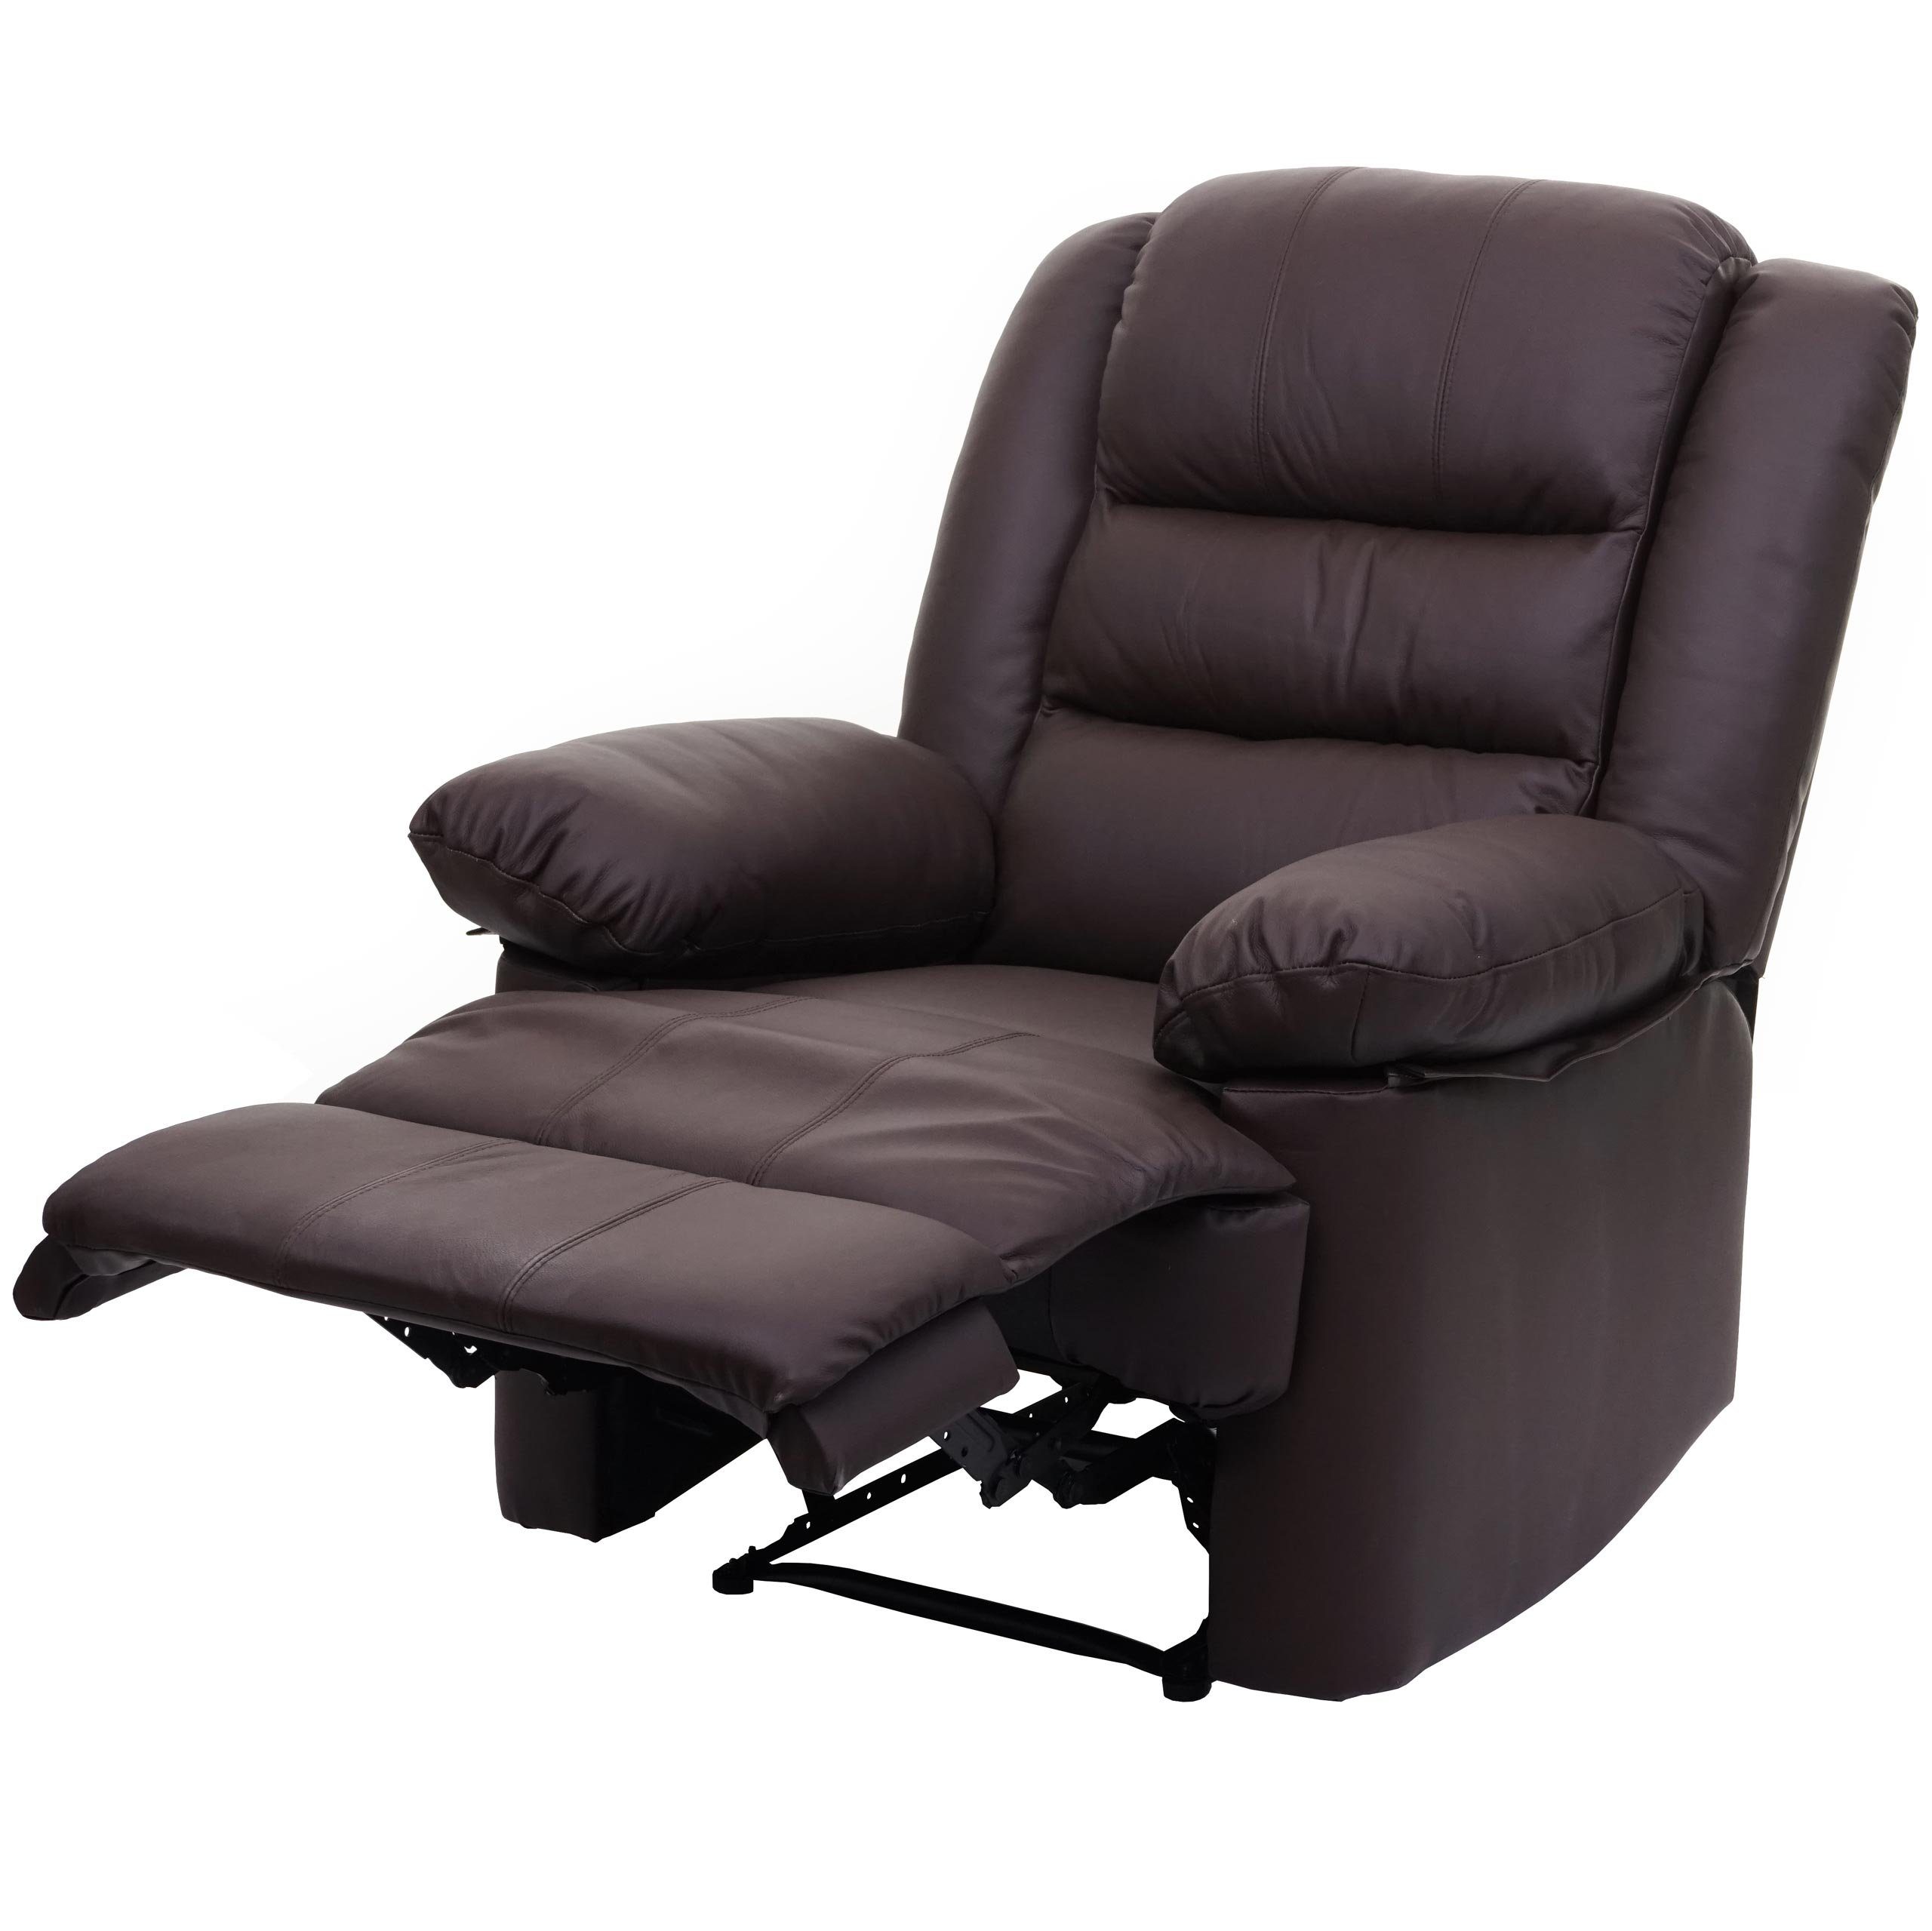 MCW TV-Sessel MCW-G15, Liegefläche: 165 cm, Verstellbare Rückenfläche, Fußstütze verstellbar, Liegefunktion braun